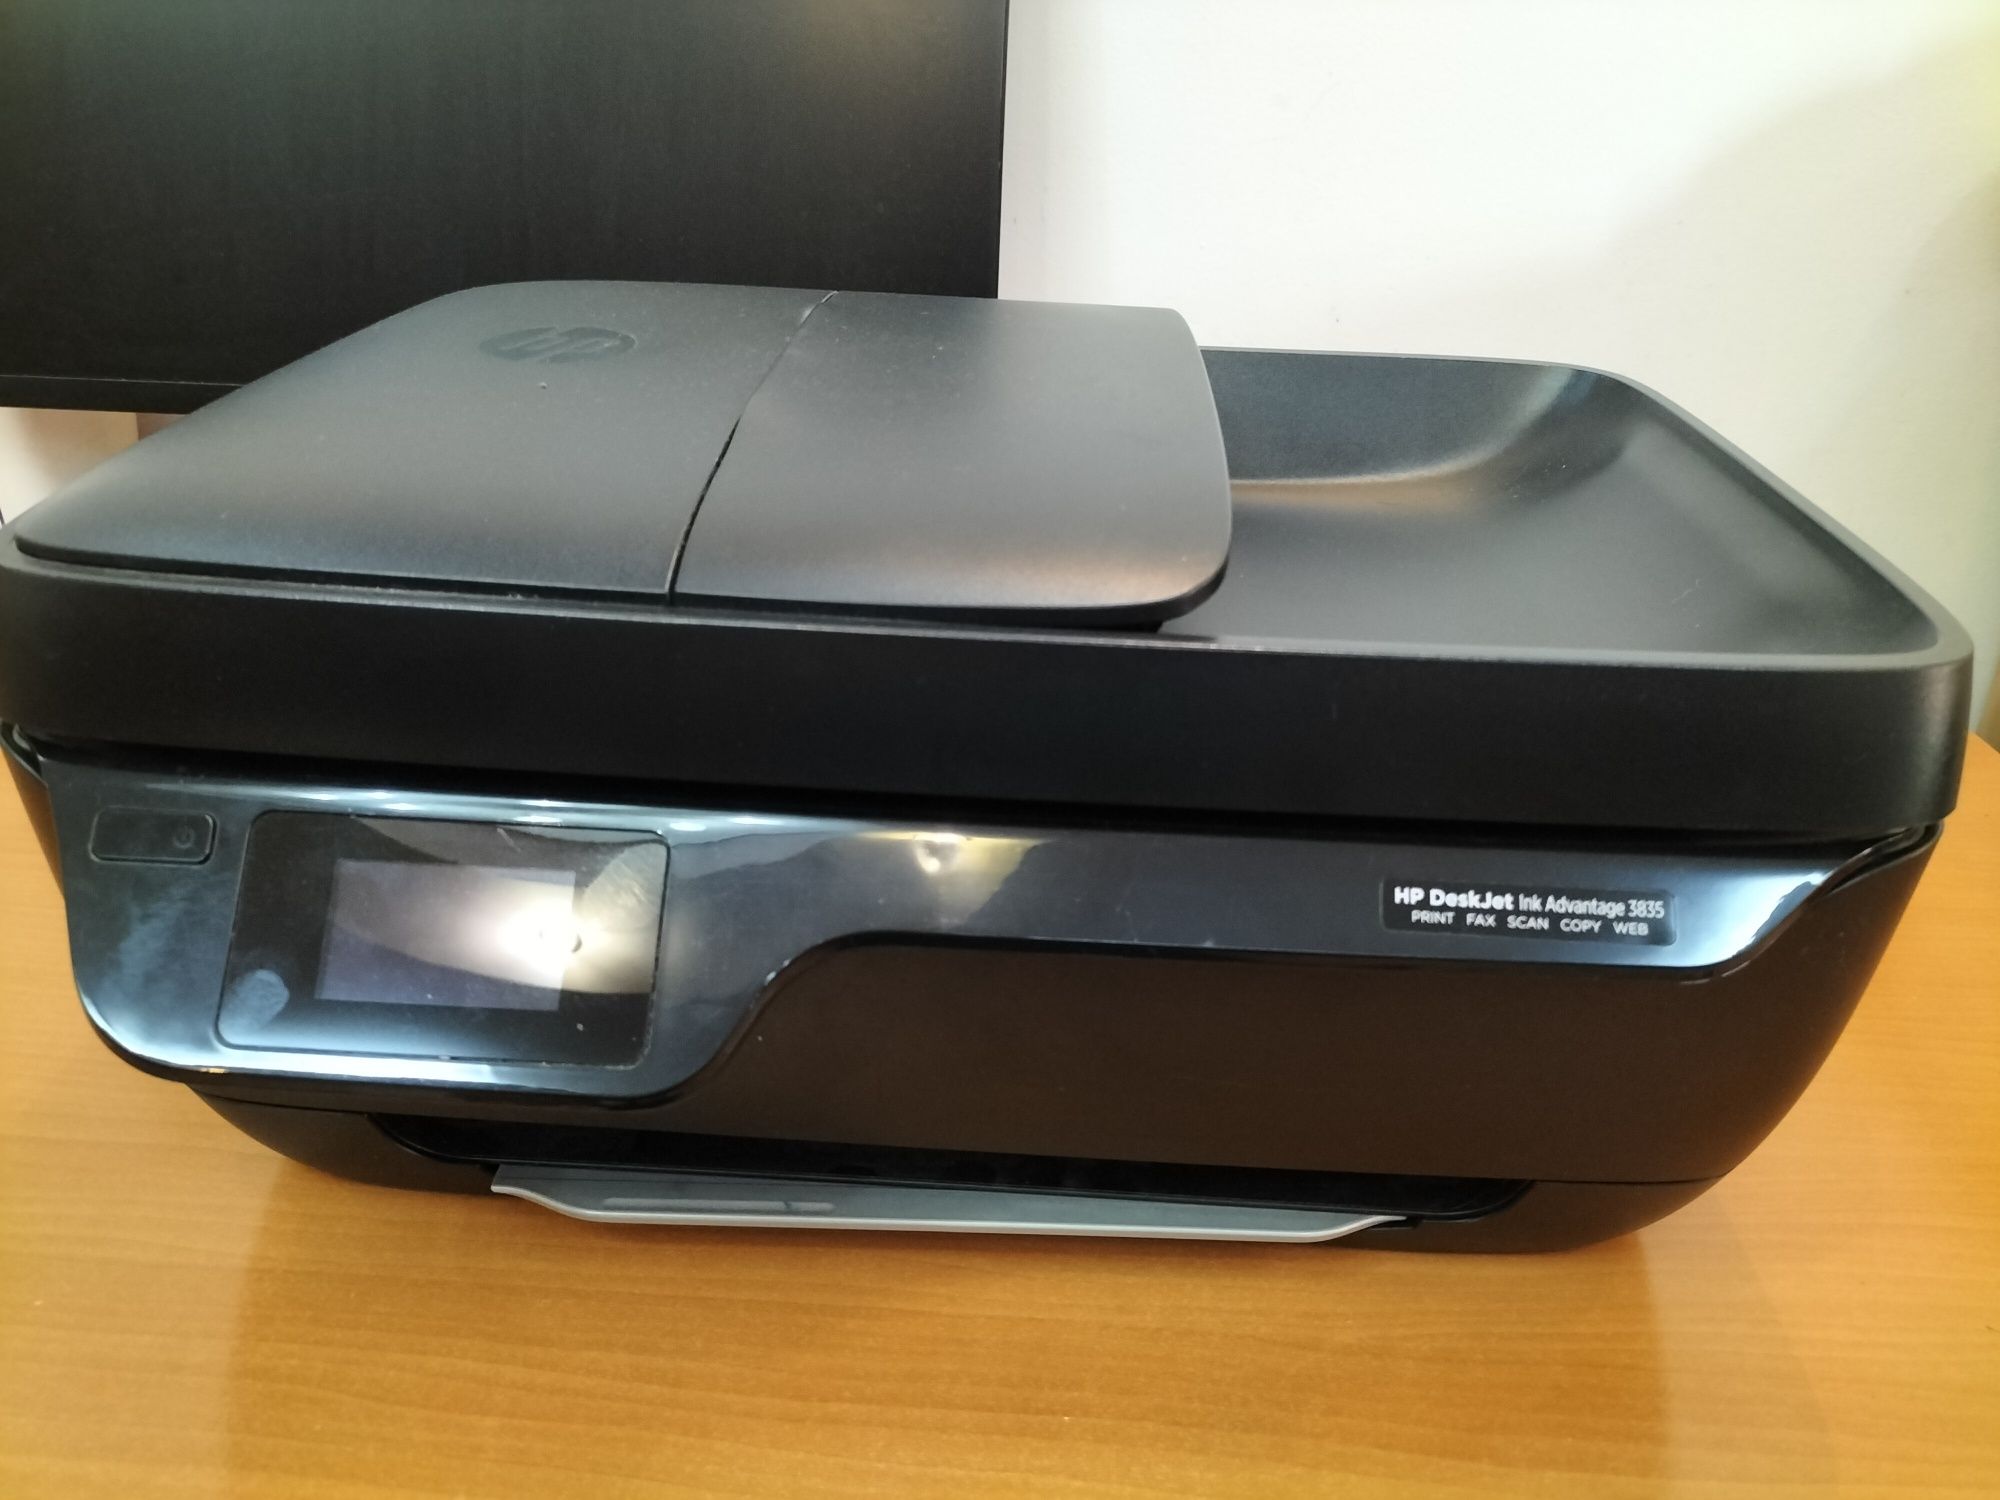 Imprimanta HP DeskJet 3835